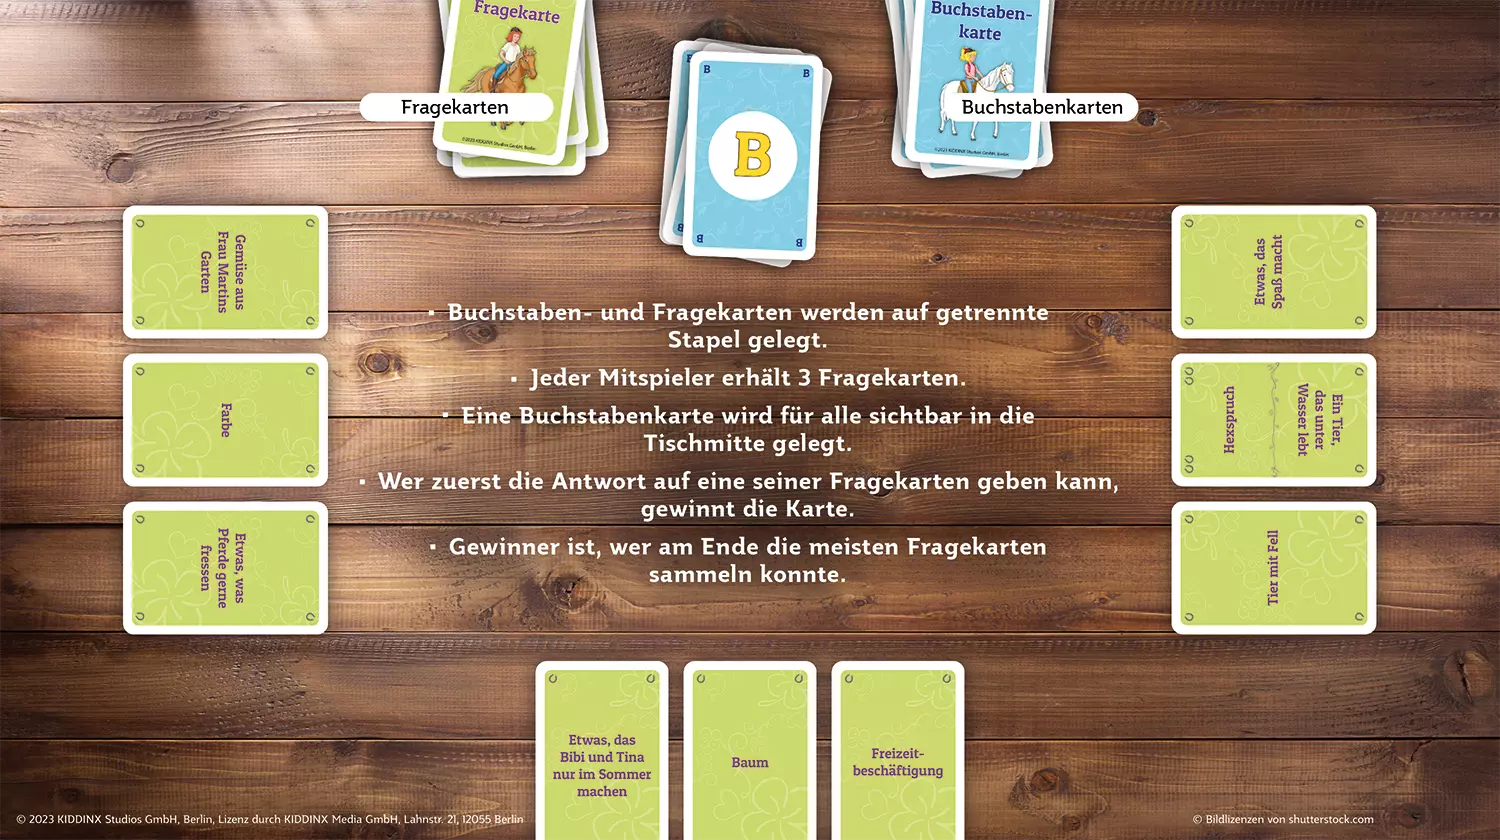 Auf einer Grafik werden die Spielregeln des ASS Altenburger Bibi & Tina Stadt name Martinshof erklärt.